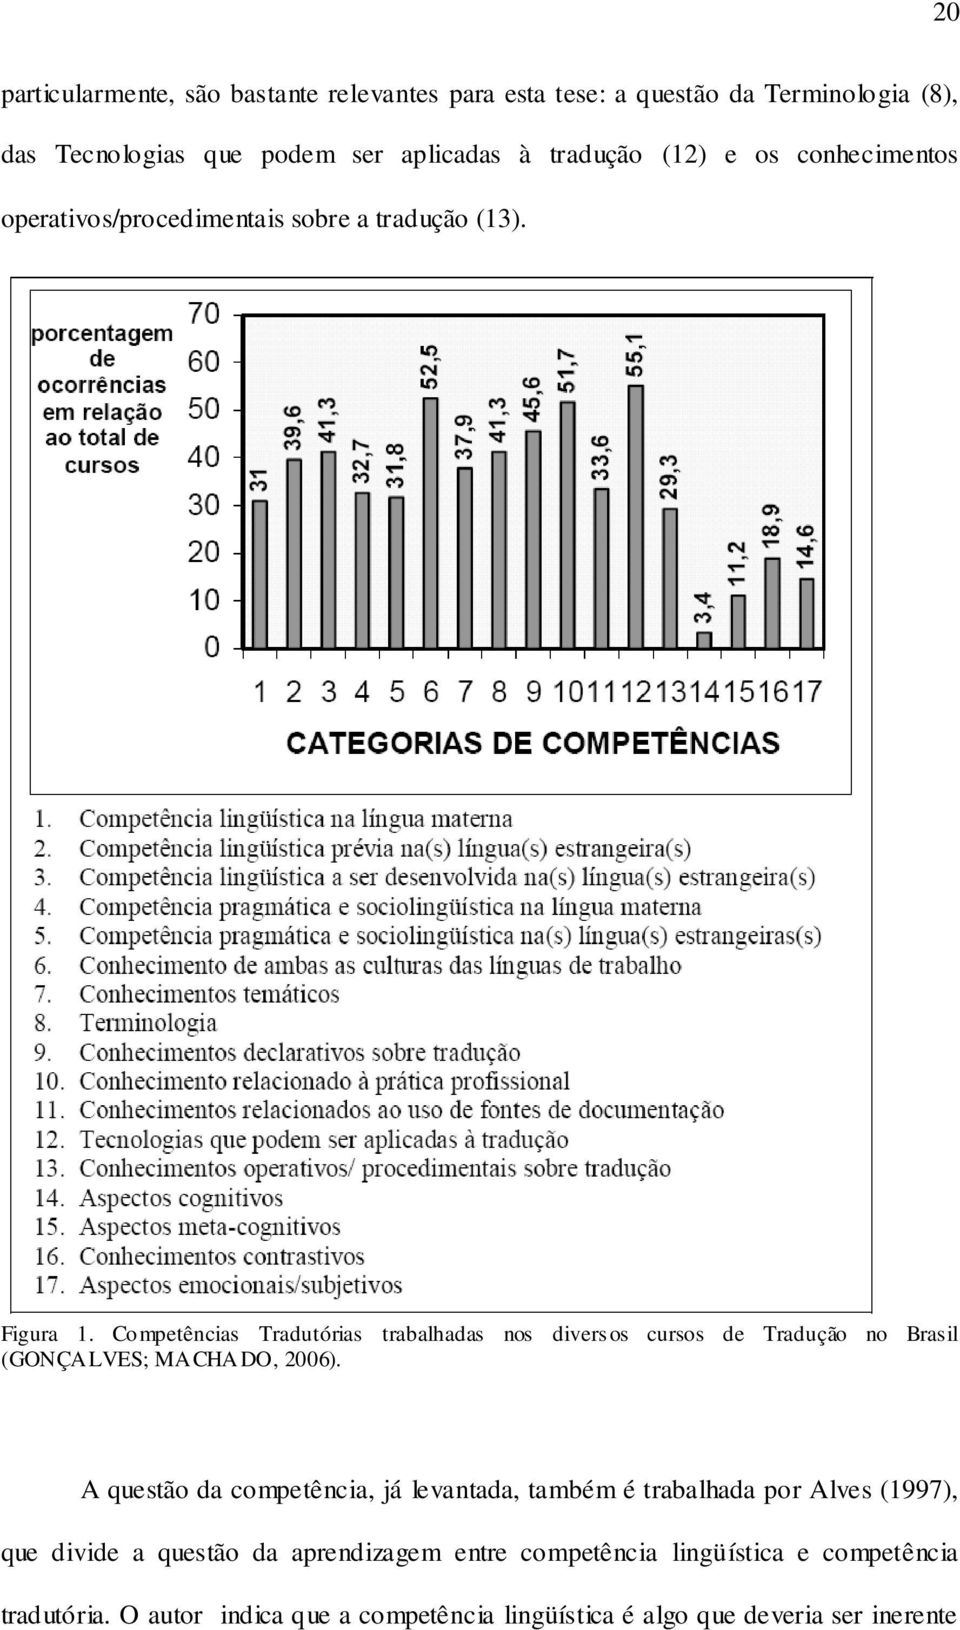 Competências Tradutórias trabalhadas nos divers os cursos de Tradução no Brasil (GONÇALVES; MACHADO, 2006).